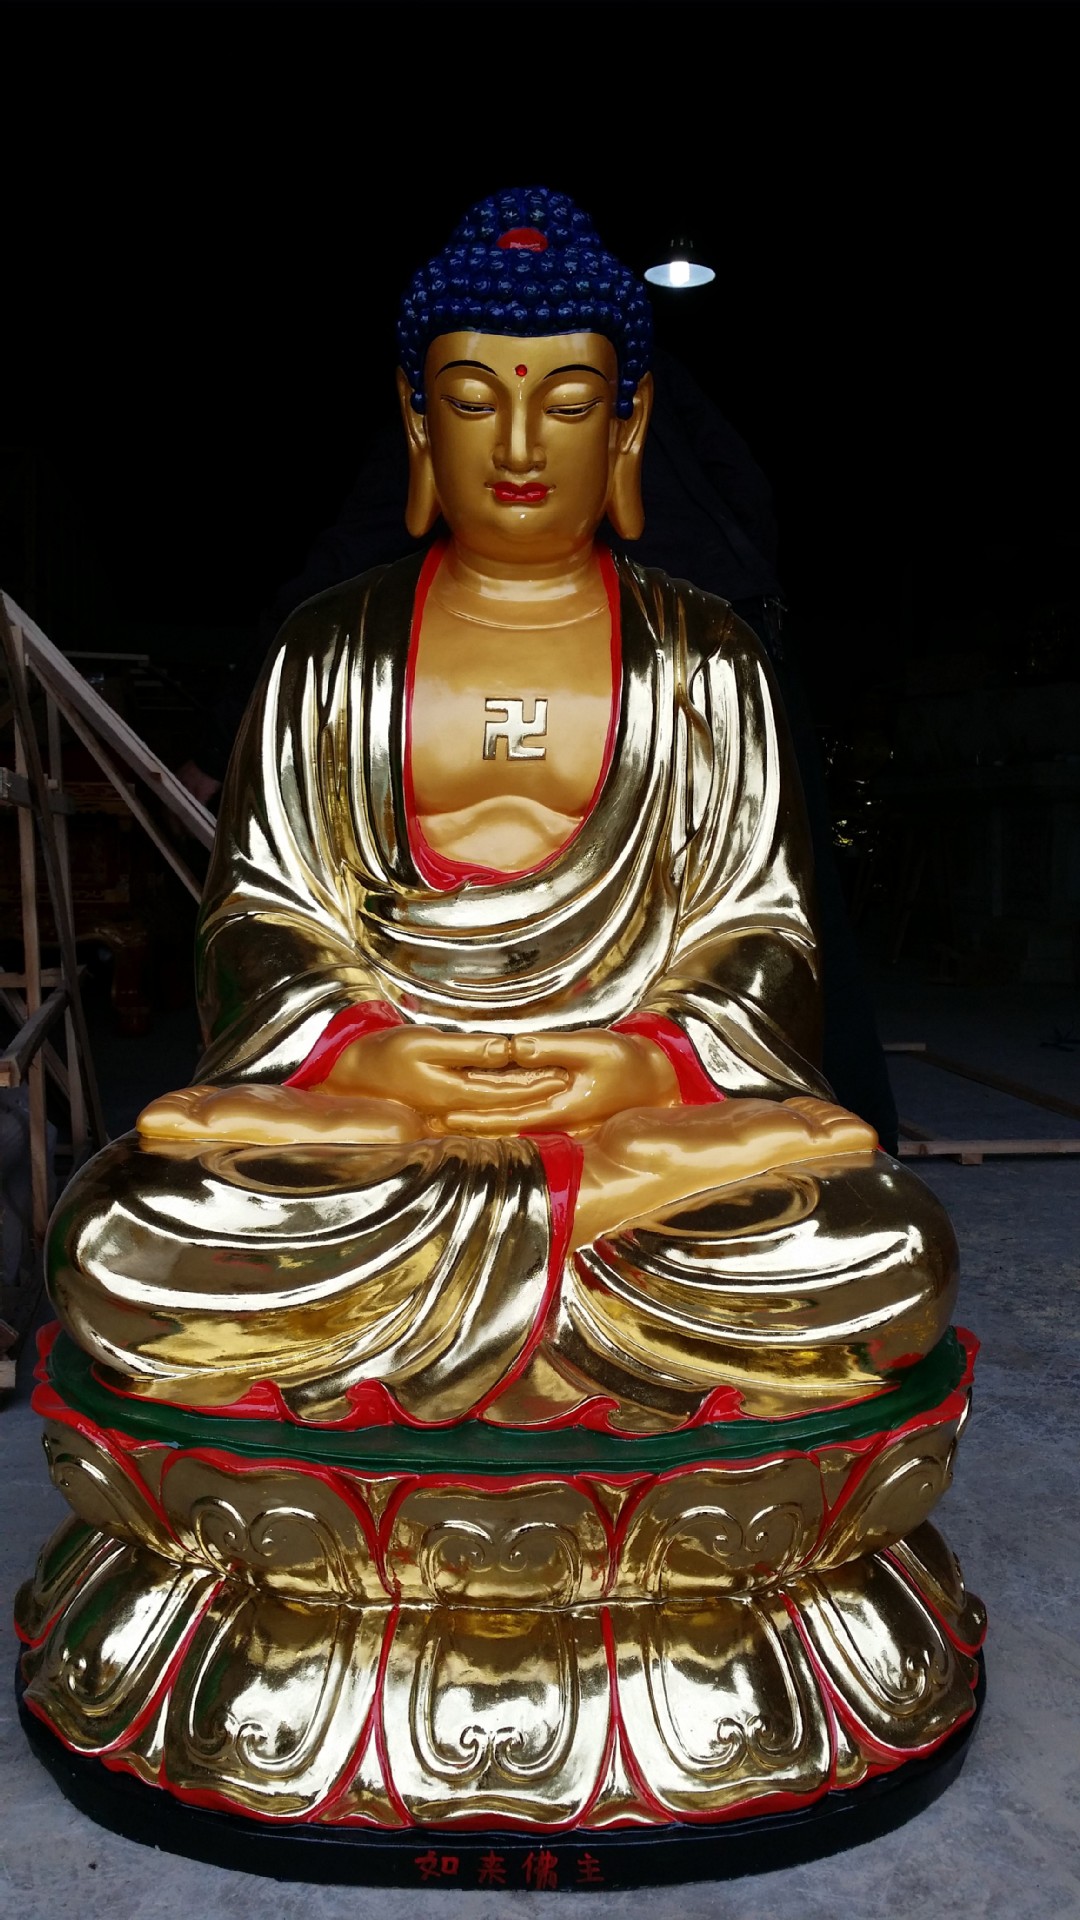 佛祖厂家直销 玻璃钢树脂佛像 贴金彩绘 释迦牟尼佛(108米)高